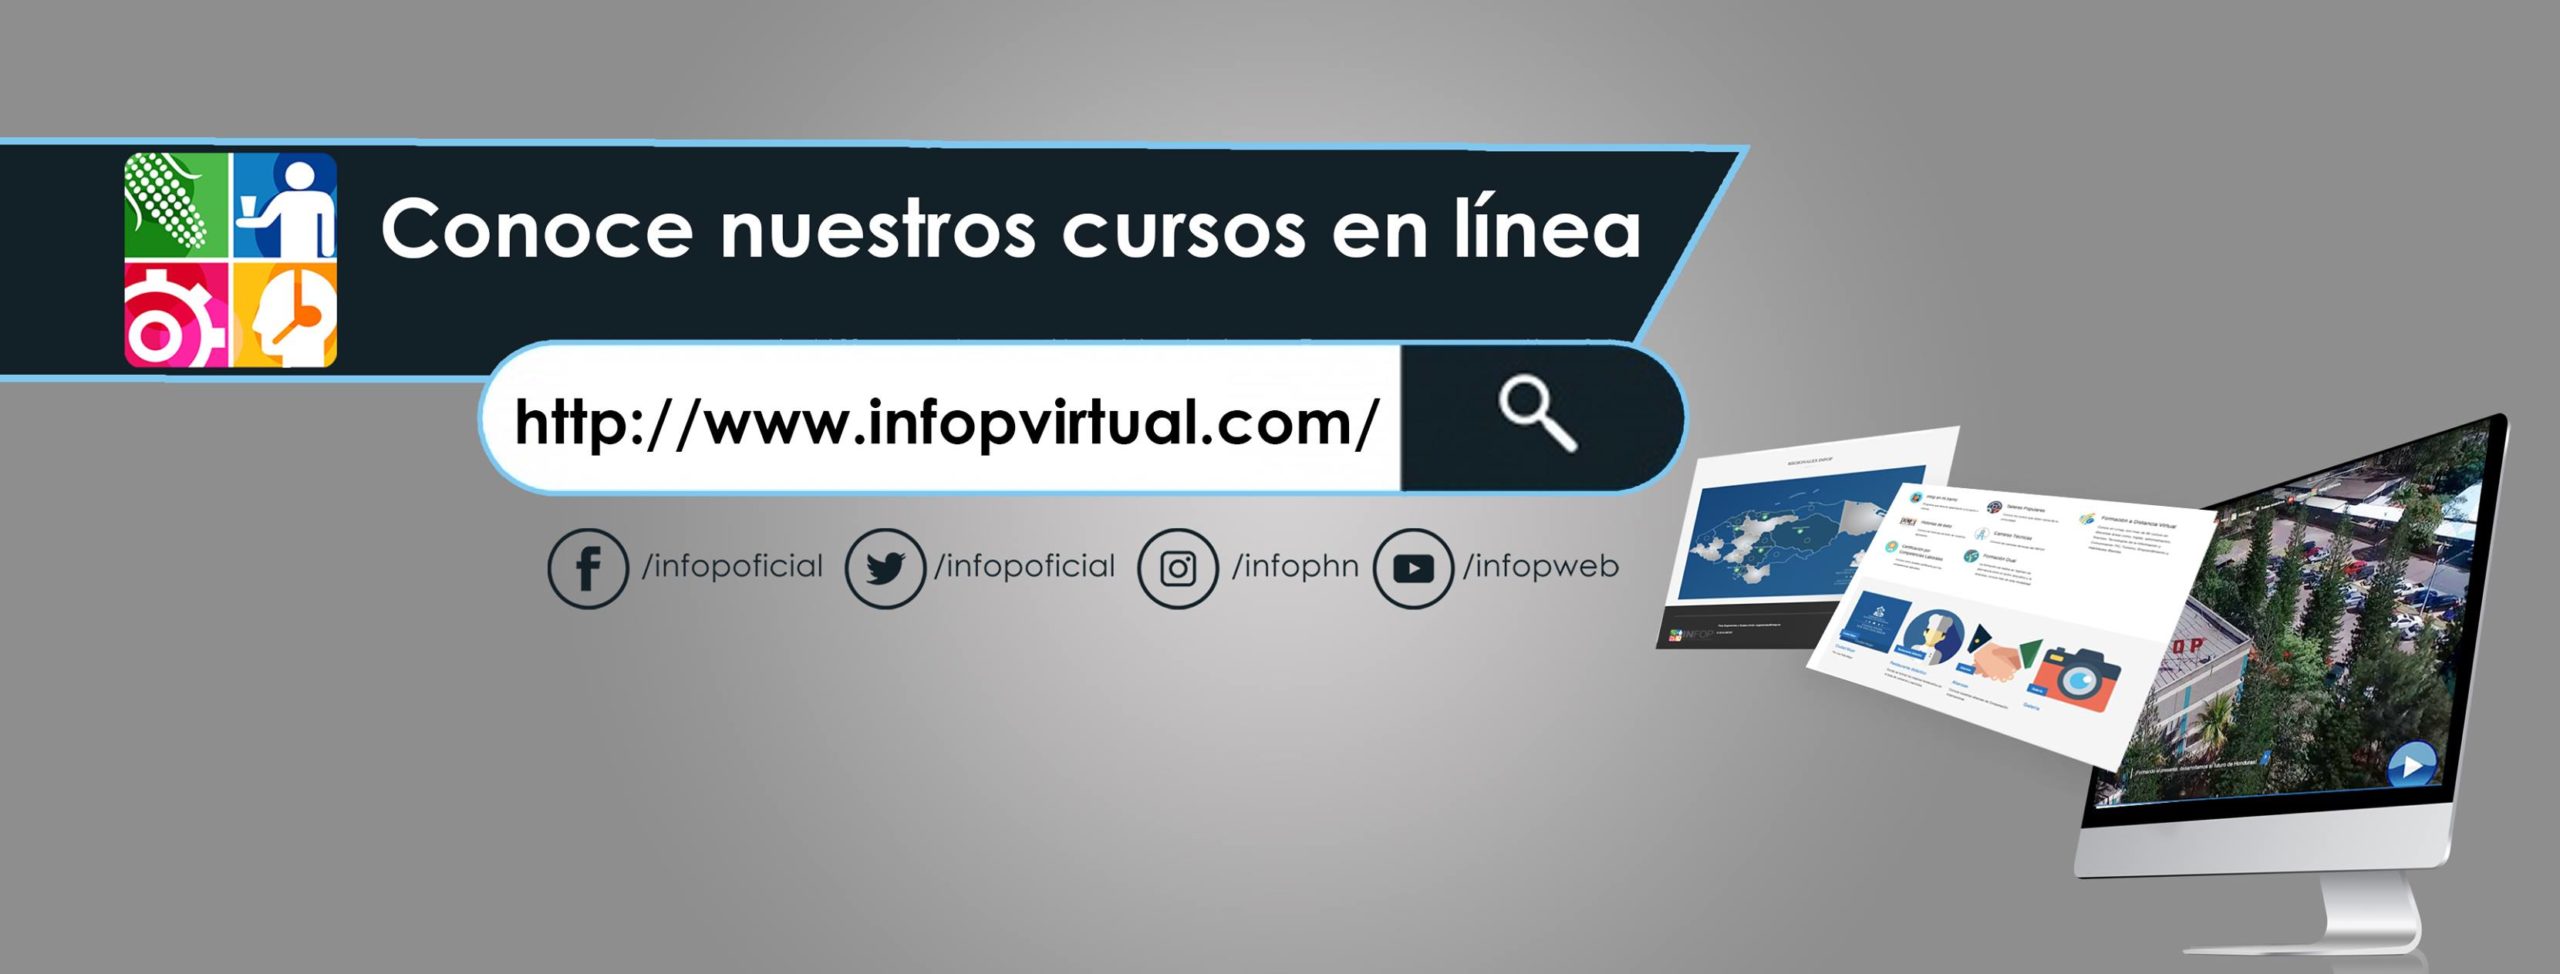 INFOP Honduras, estos son los cursos virtuales disponibles en la